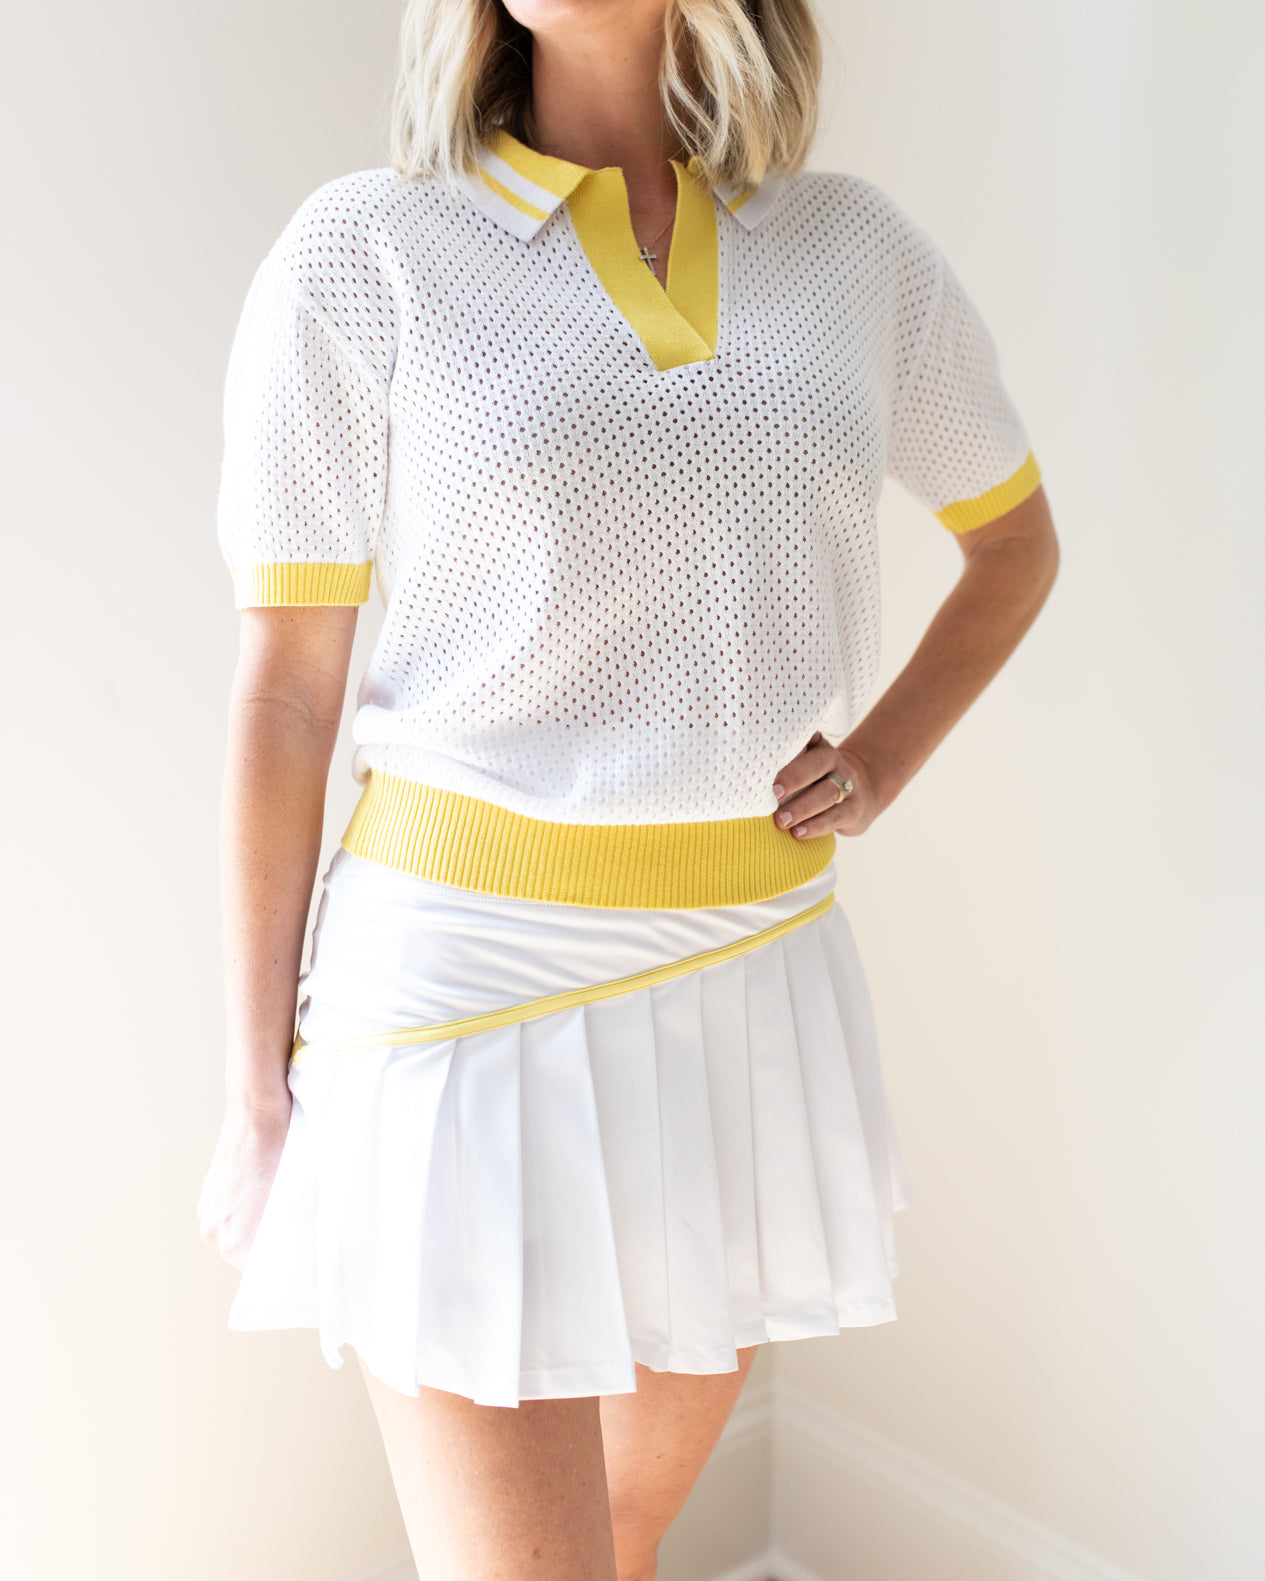 White and Yellow Tennis Shirt